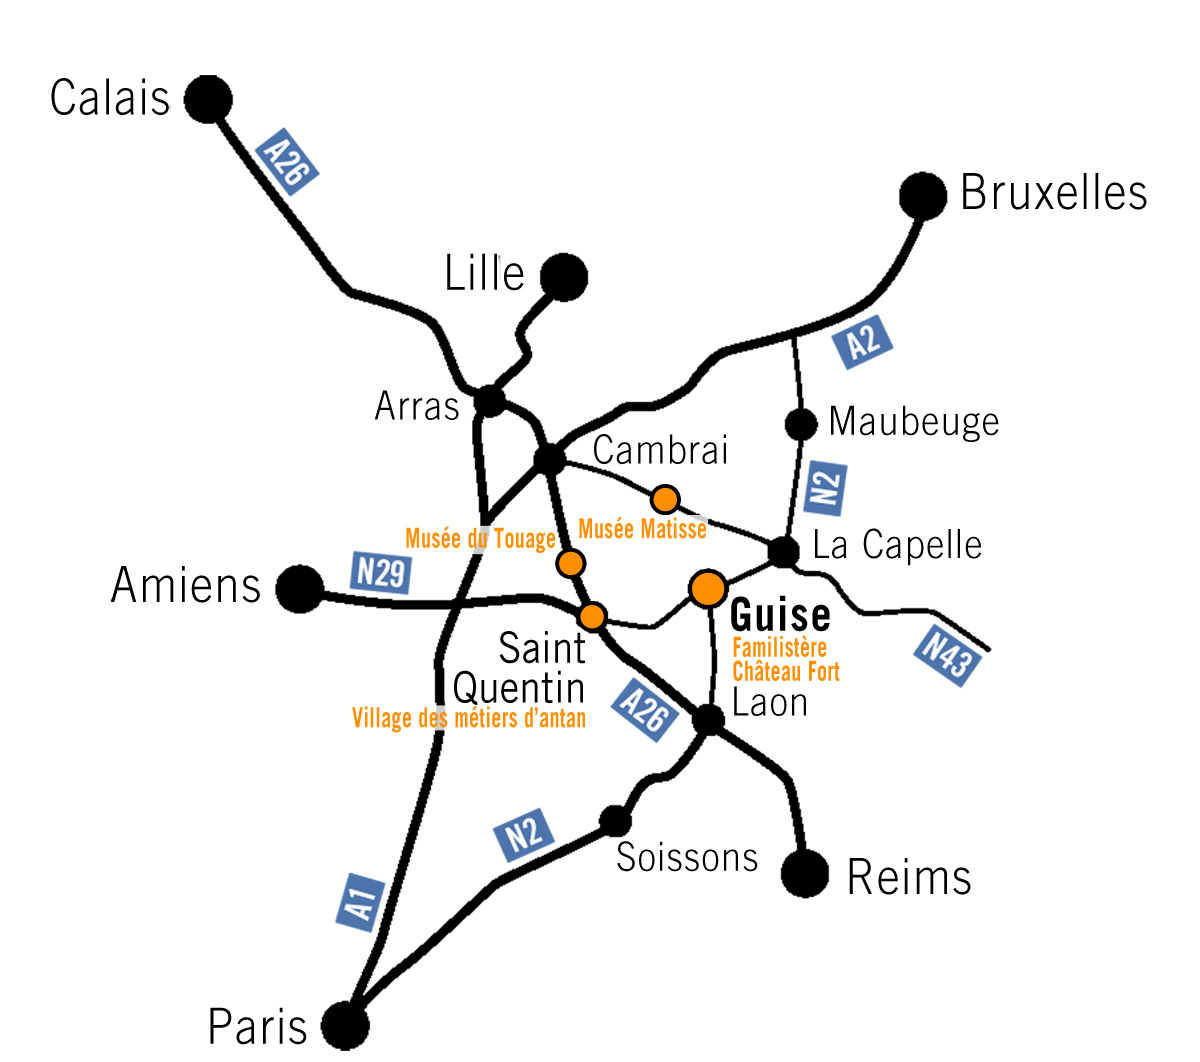 La carte présente les sites à visiter dans l'Aisne.